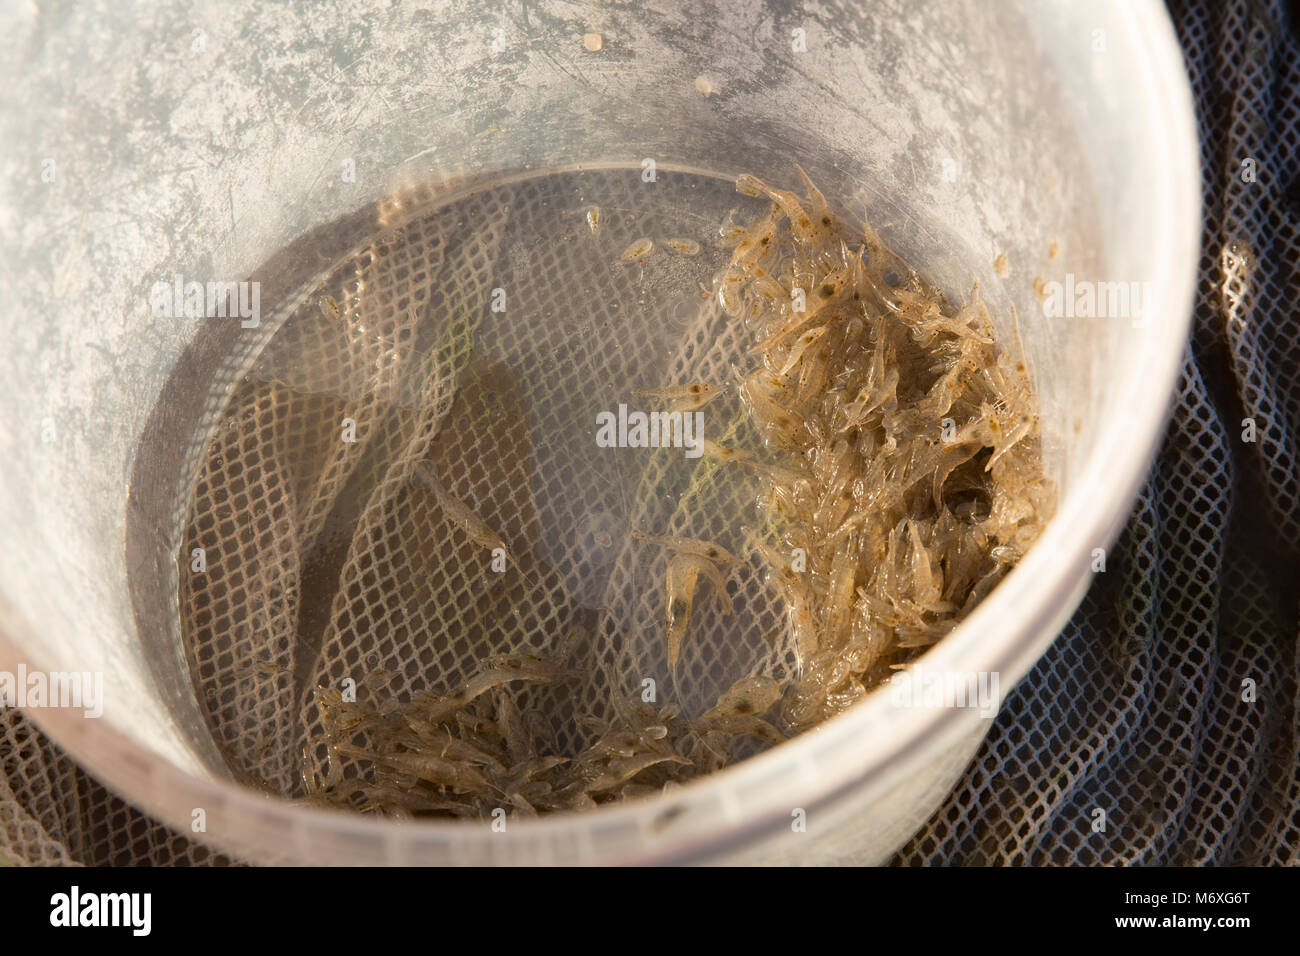 Morecambe Bay brown gamberetti della specie Crangon crangon, catturati in una casa fatta spingere net con la bassa marea. Lancashire England Regno Unito GB Foto Stock